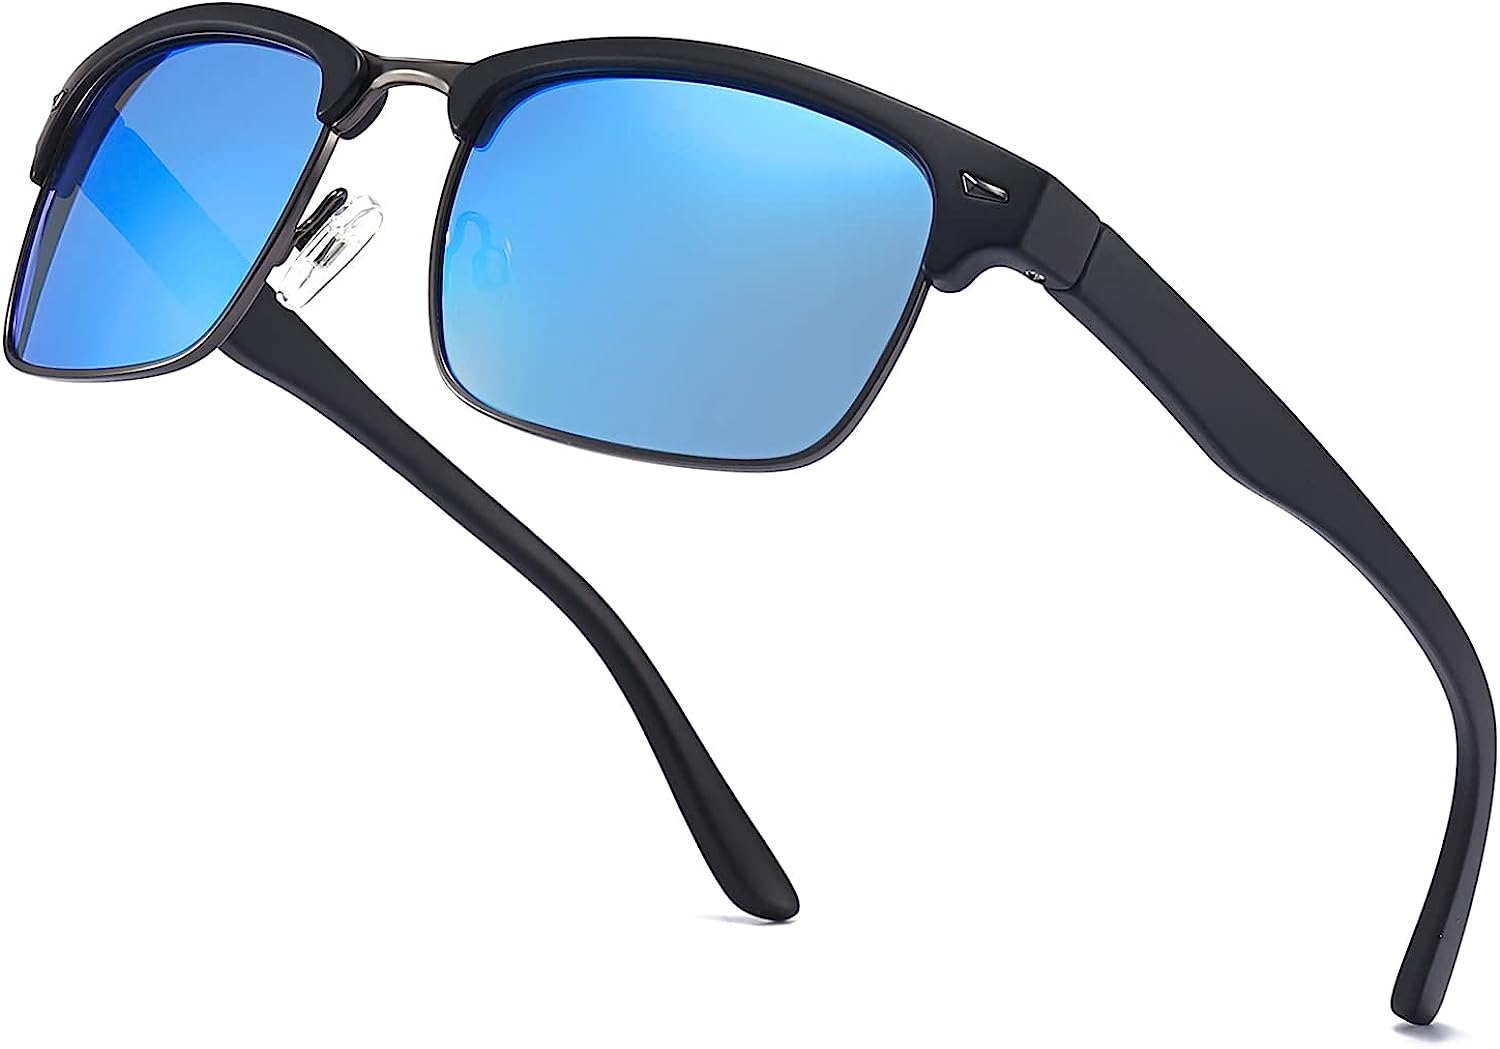 Dollger Polarized Sunglasses TR90 Frame Lightweight Sunglasses for